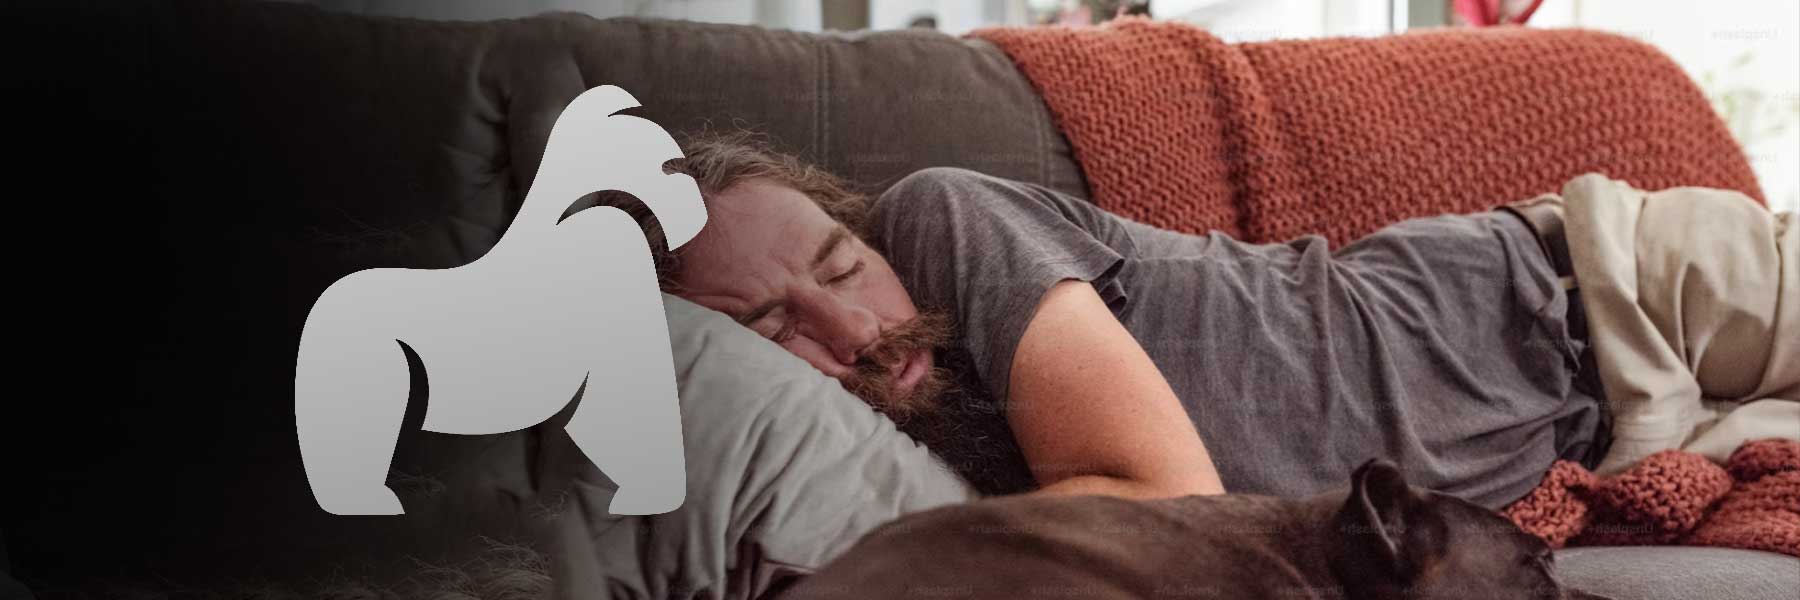 Die Wissenschaft des Schlafs: Ist zu viel Schlaf schädlich?